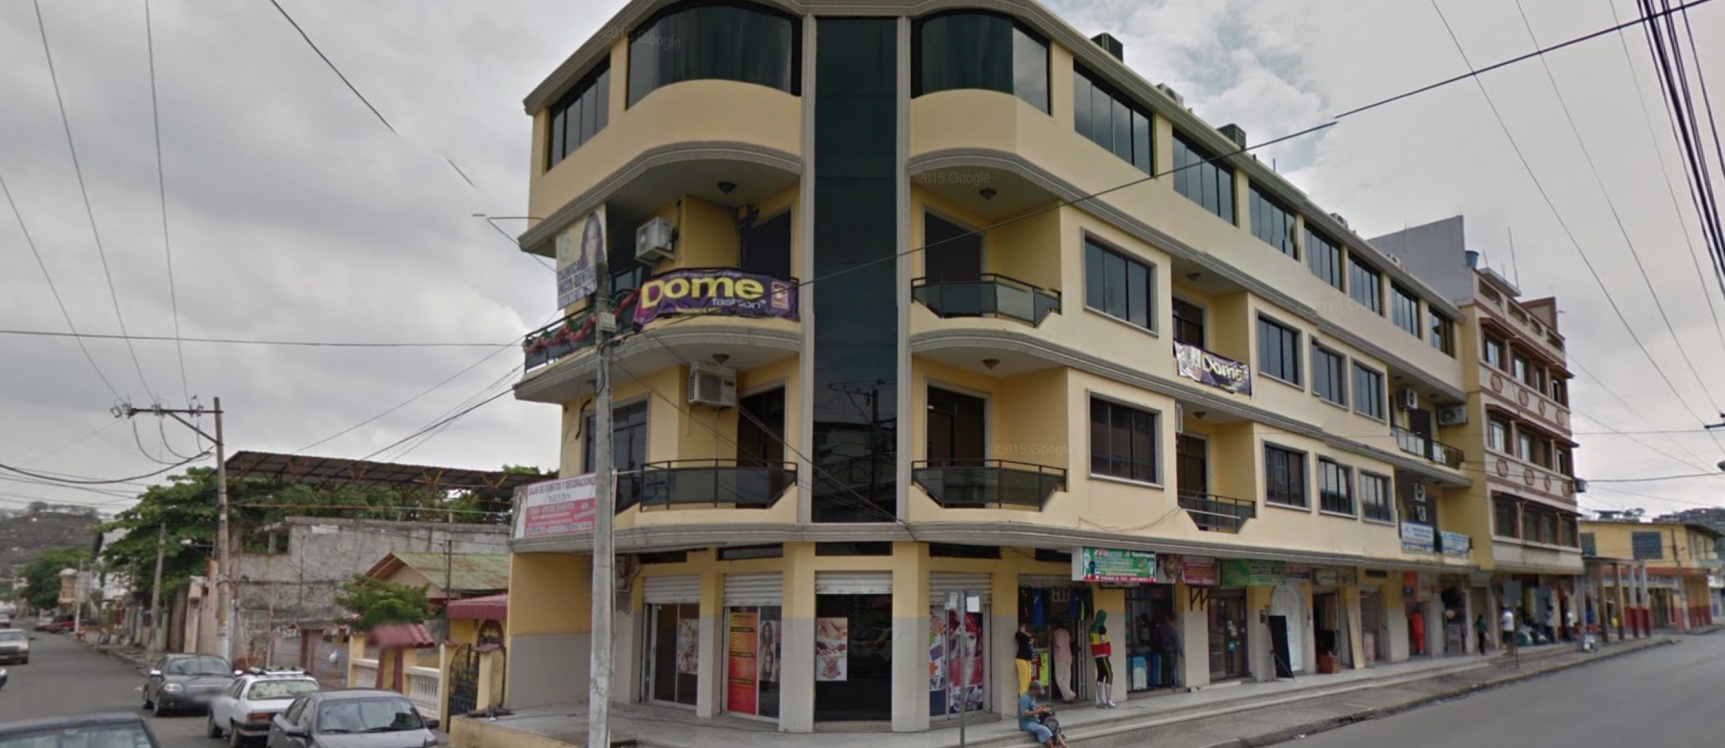 GeoBienes - Edificio entero en venta con locales comerciales en Durán - Plusvalia Guayaquil Casas de venta y alquiler Inmobiliaria Ecuador